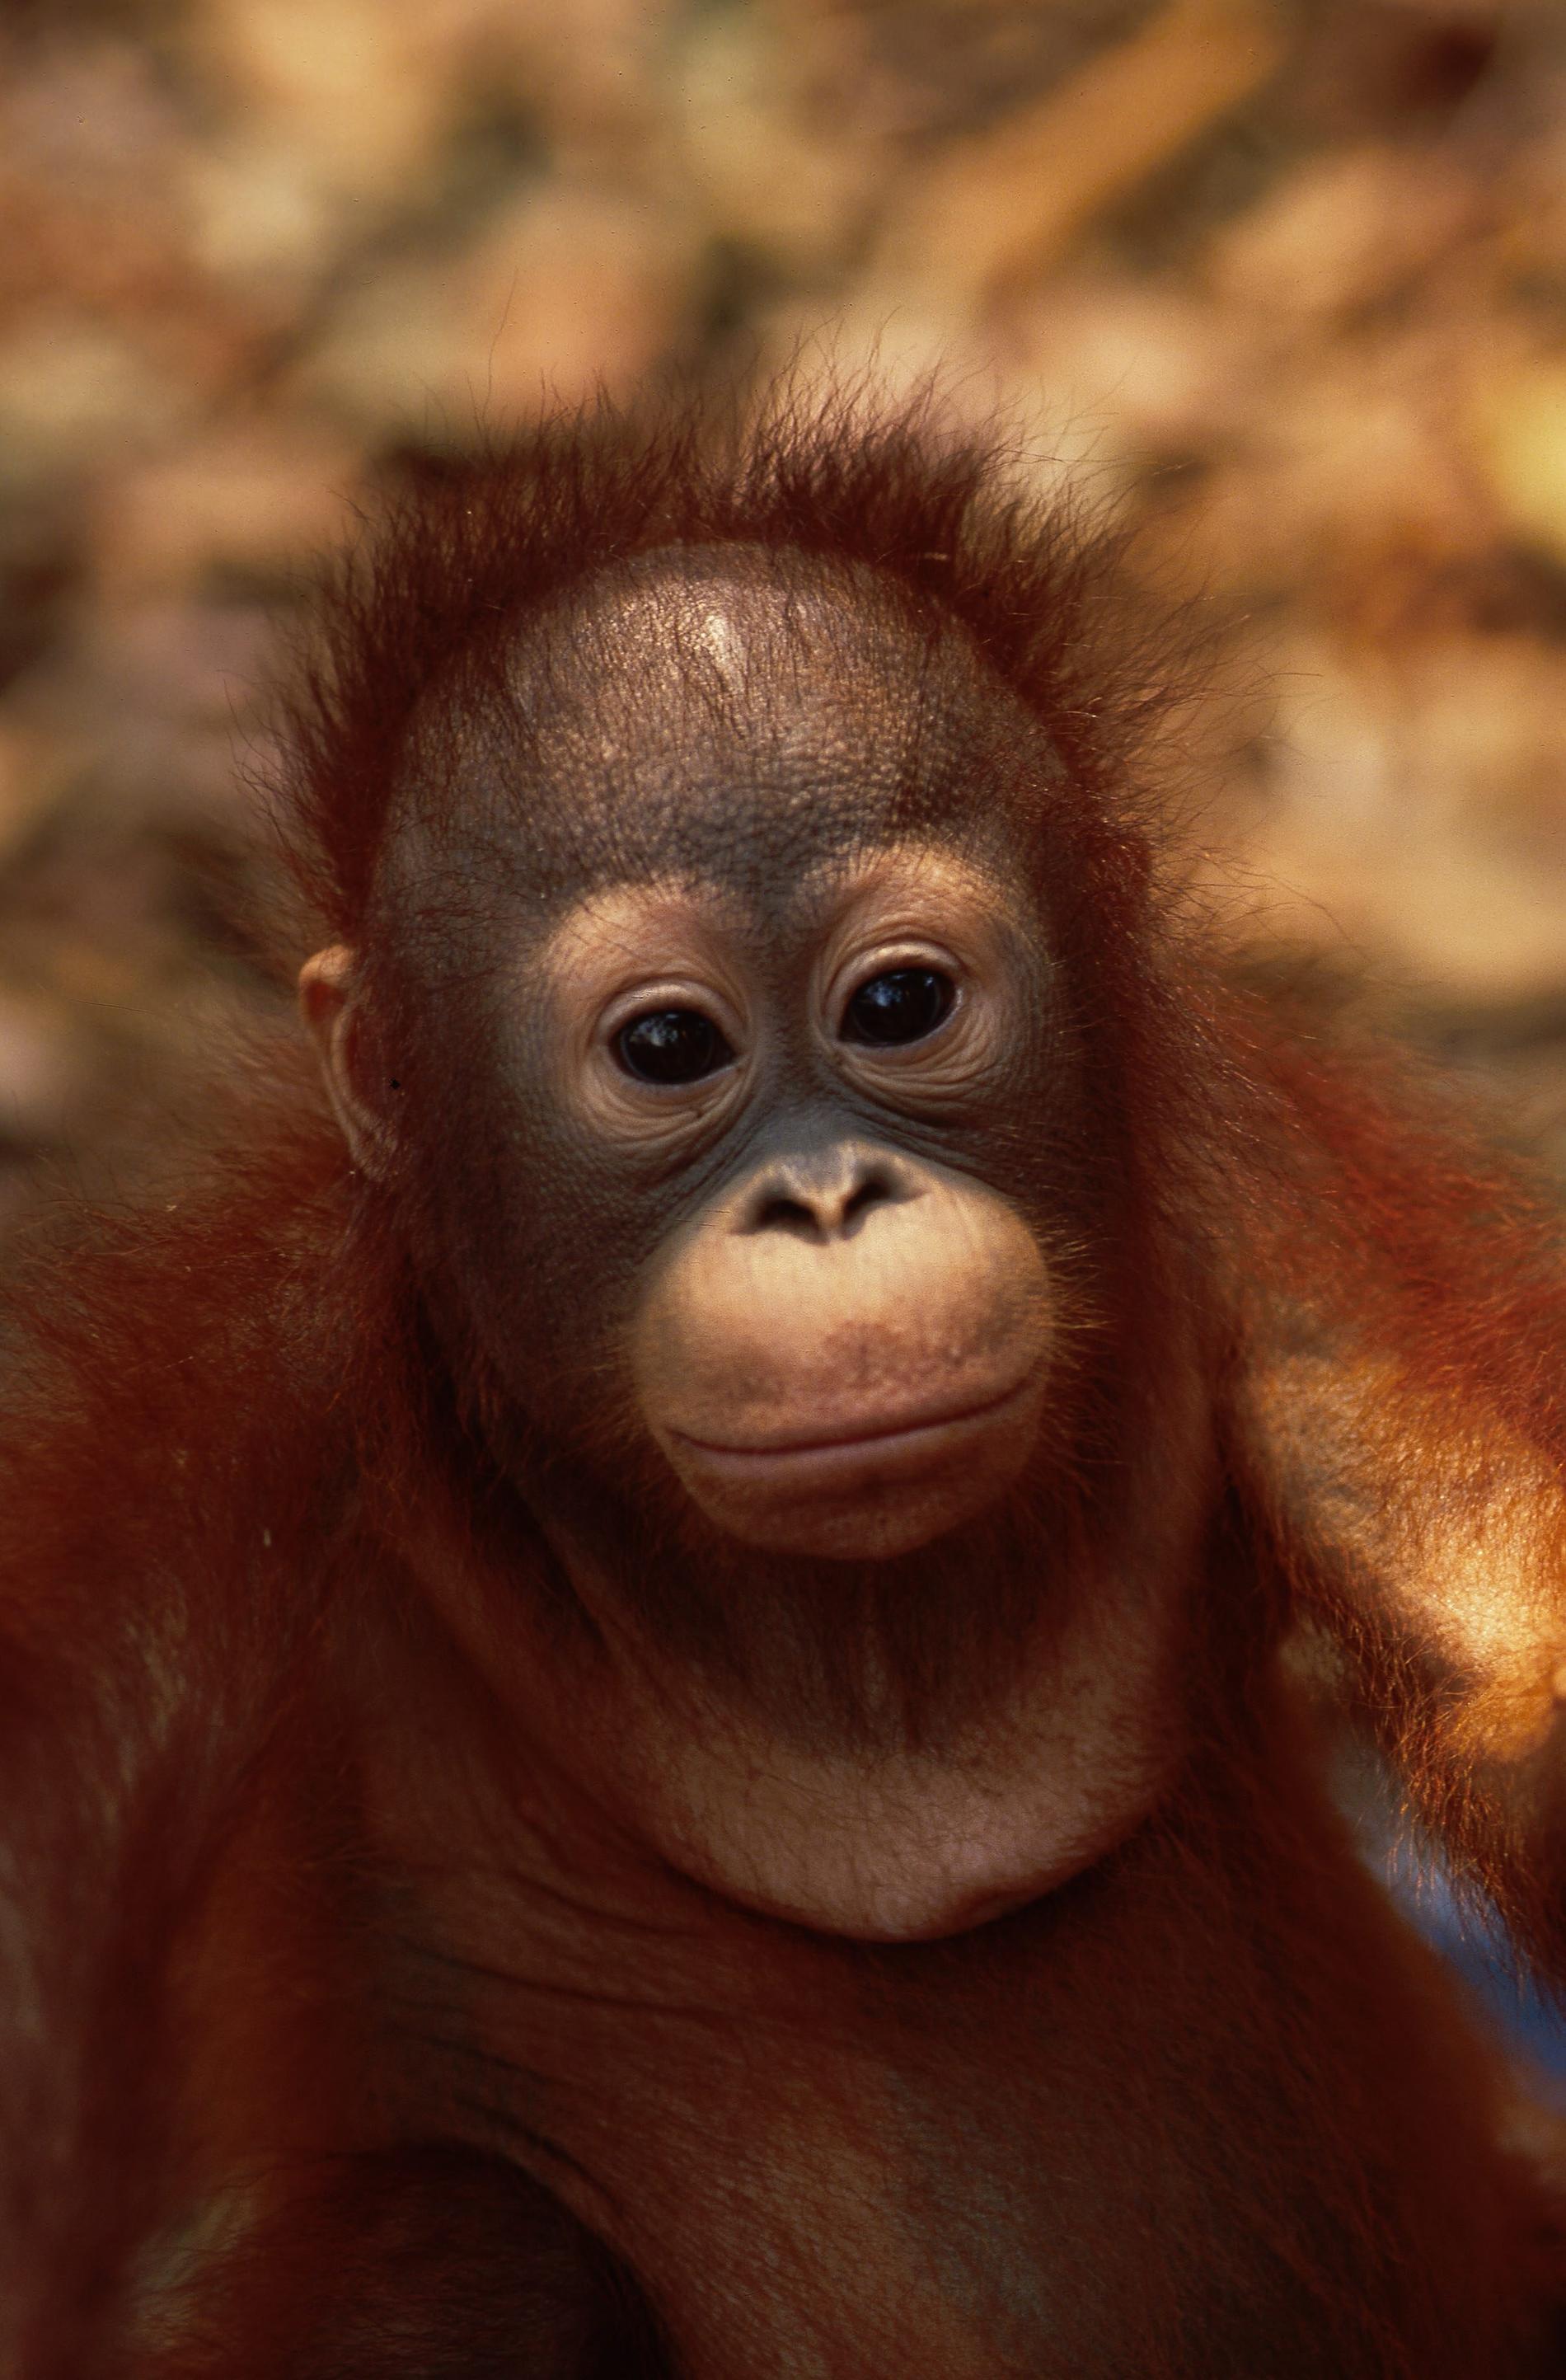 Oljepalmsplantager och tjuvjakt har drabbat orangutangerna på Borneo hårt. Men kanske har man nu lyckats hejda den nedåtgående trenden.